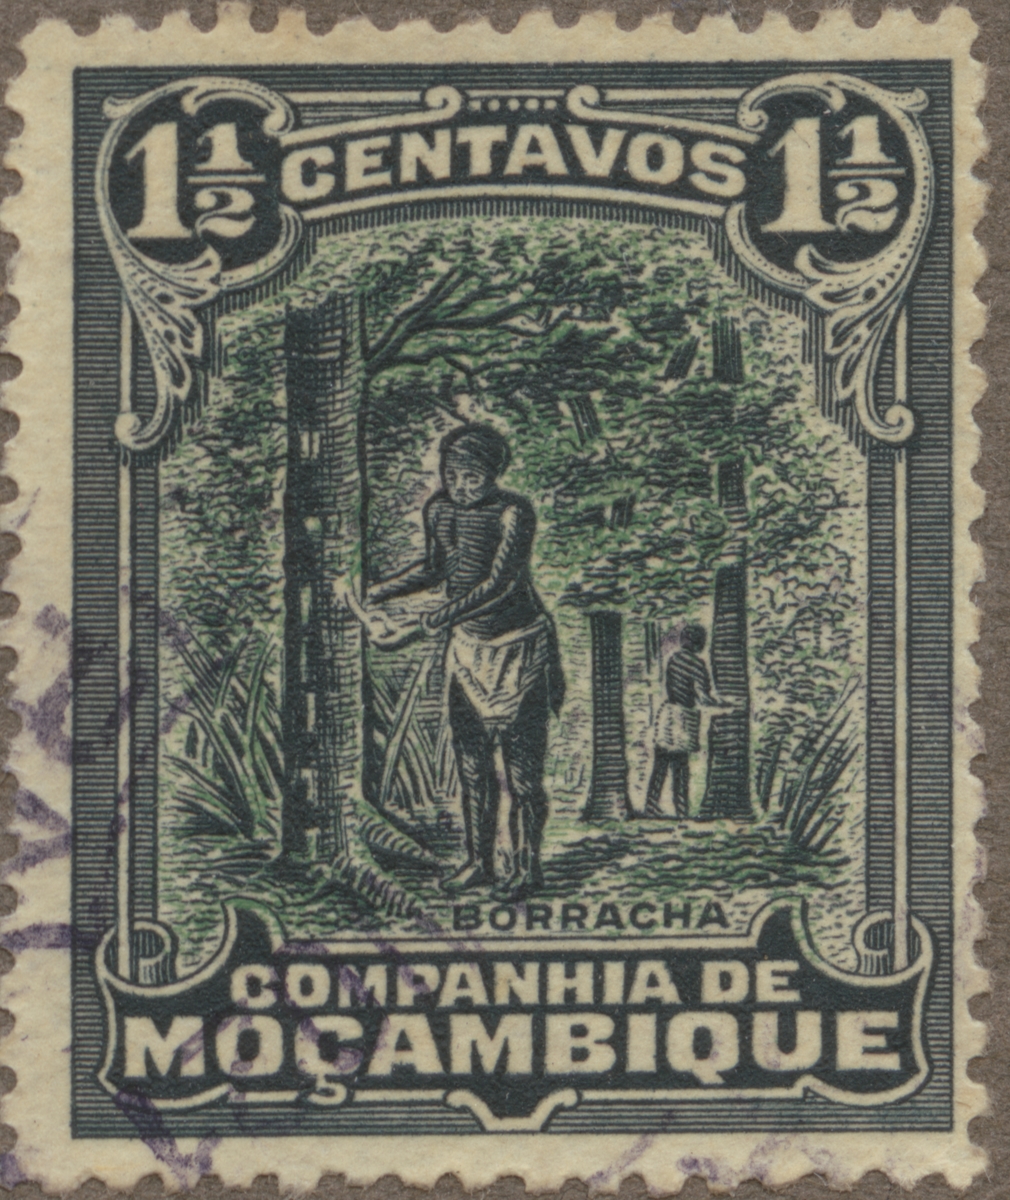 Frimärke ur Gösta Bodmans filatelistiska motivsamling, påbörjad 1950.
Frimärke från Mocambique Kompaniet (Ostafrika) 1918. Motiv av gummitappning.